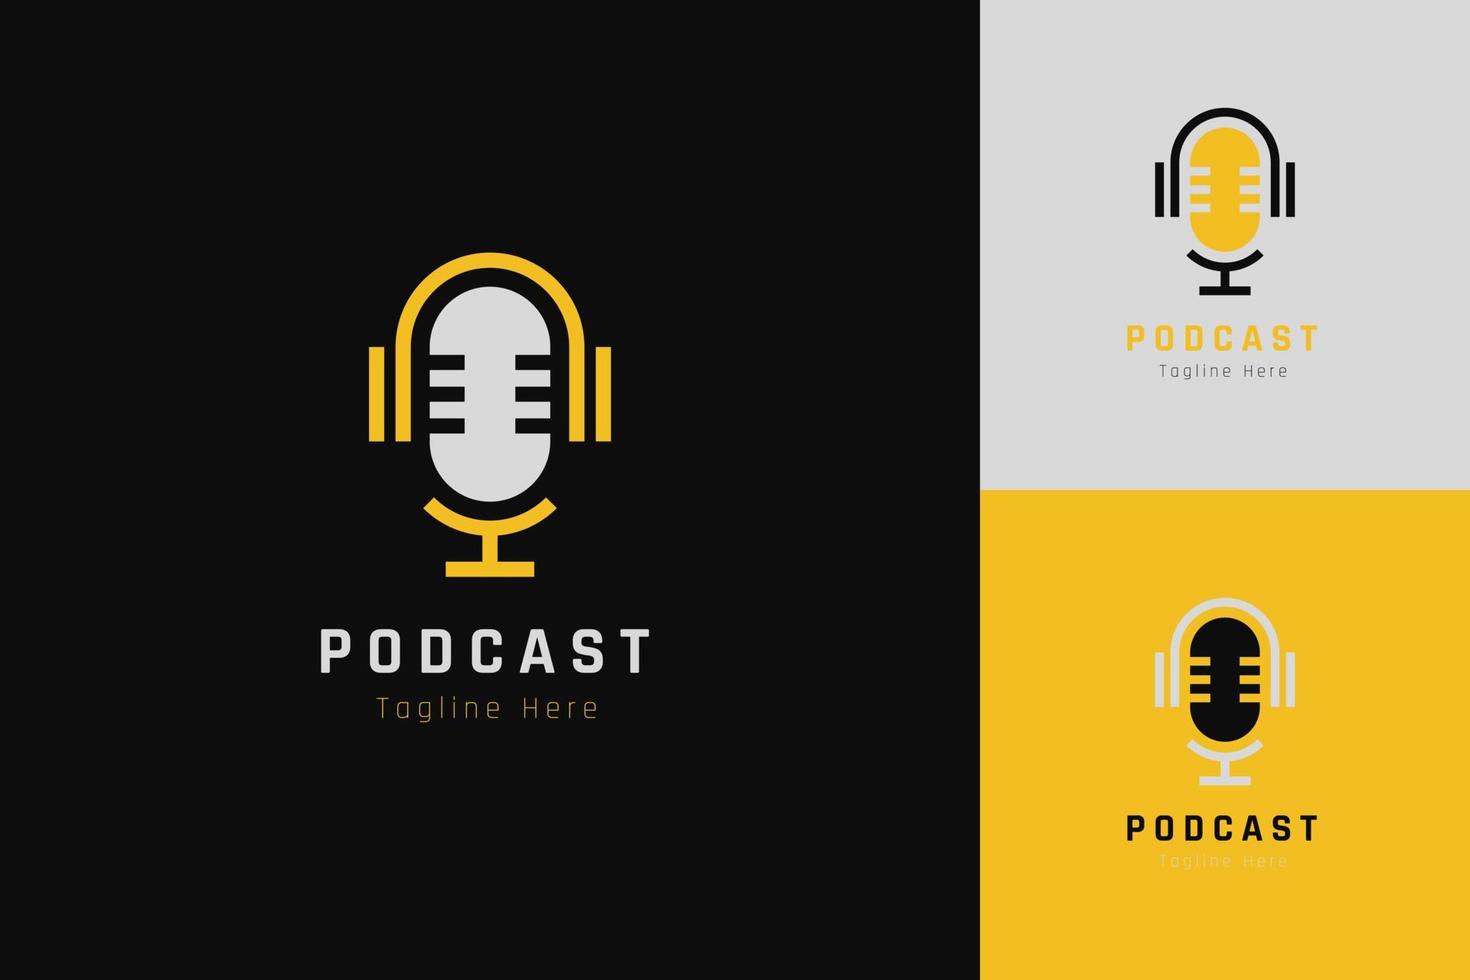 impostato di Podcast microfono logo vettore design modello con diverso colore stile